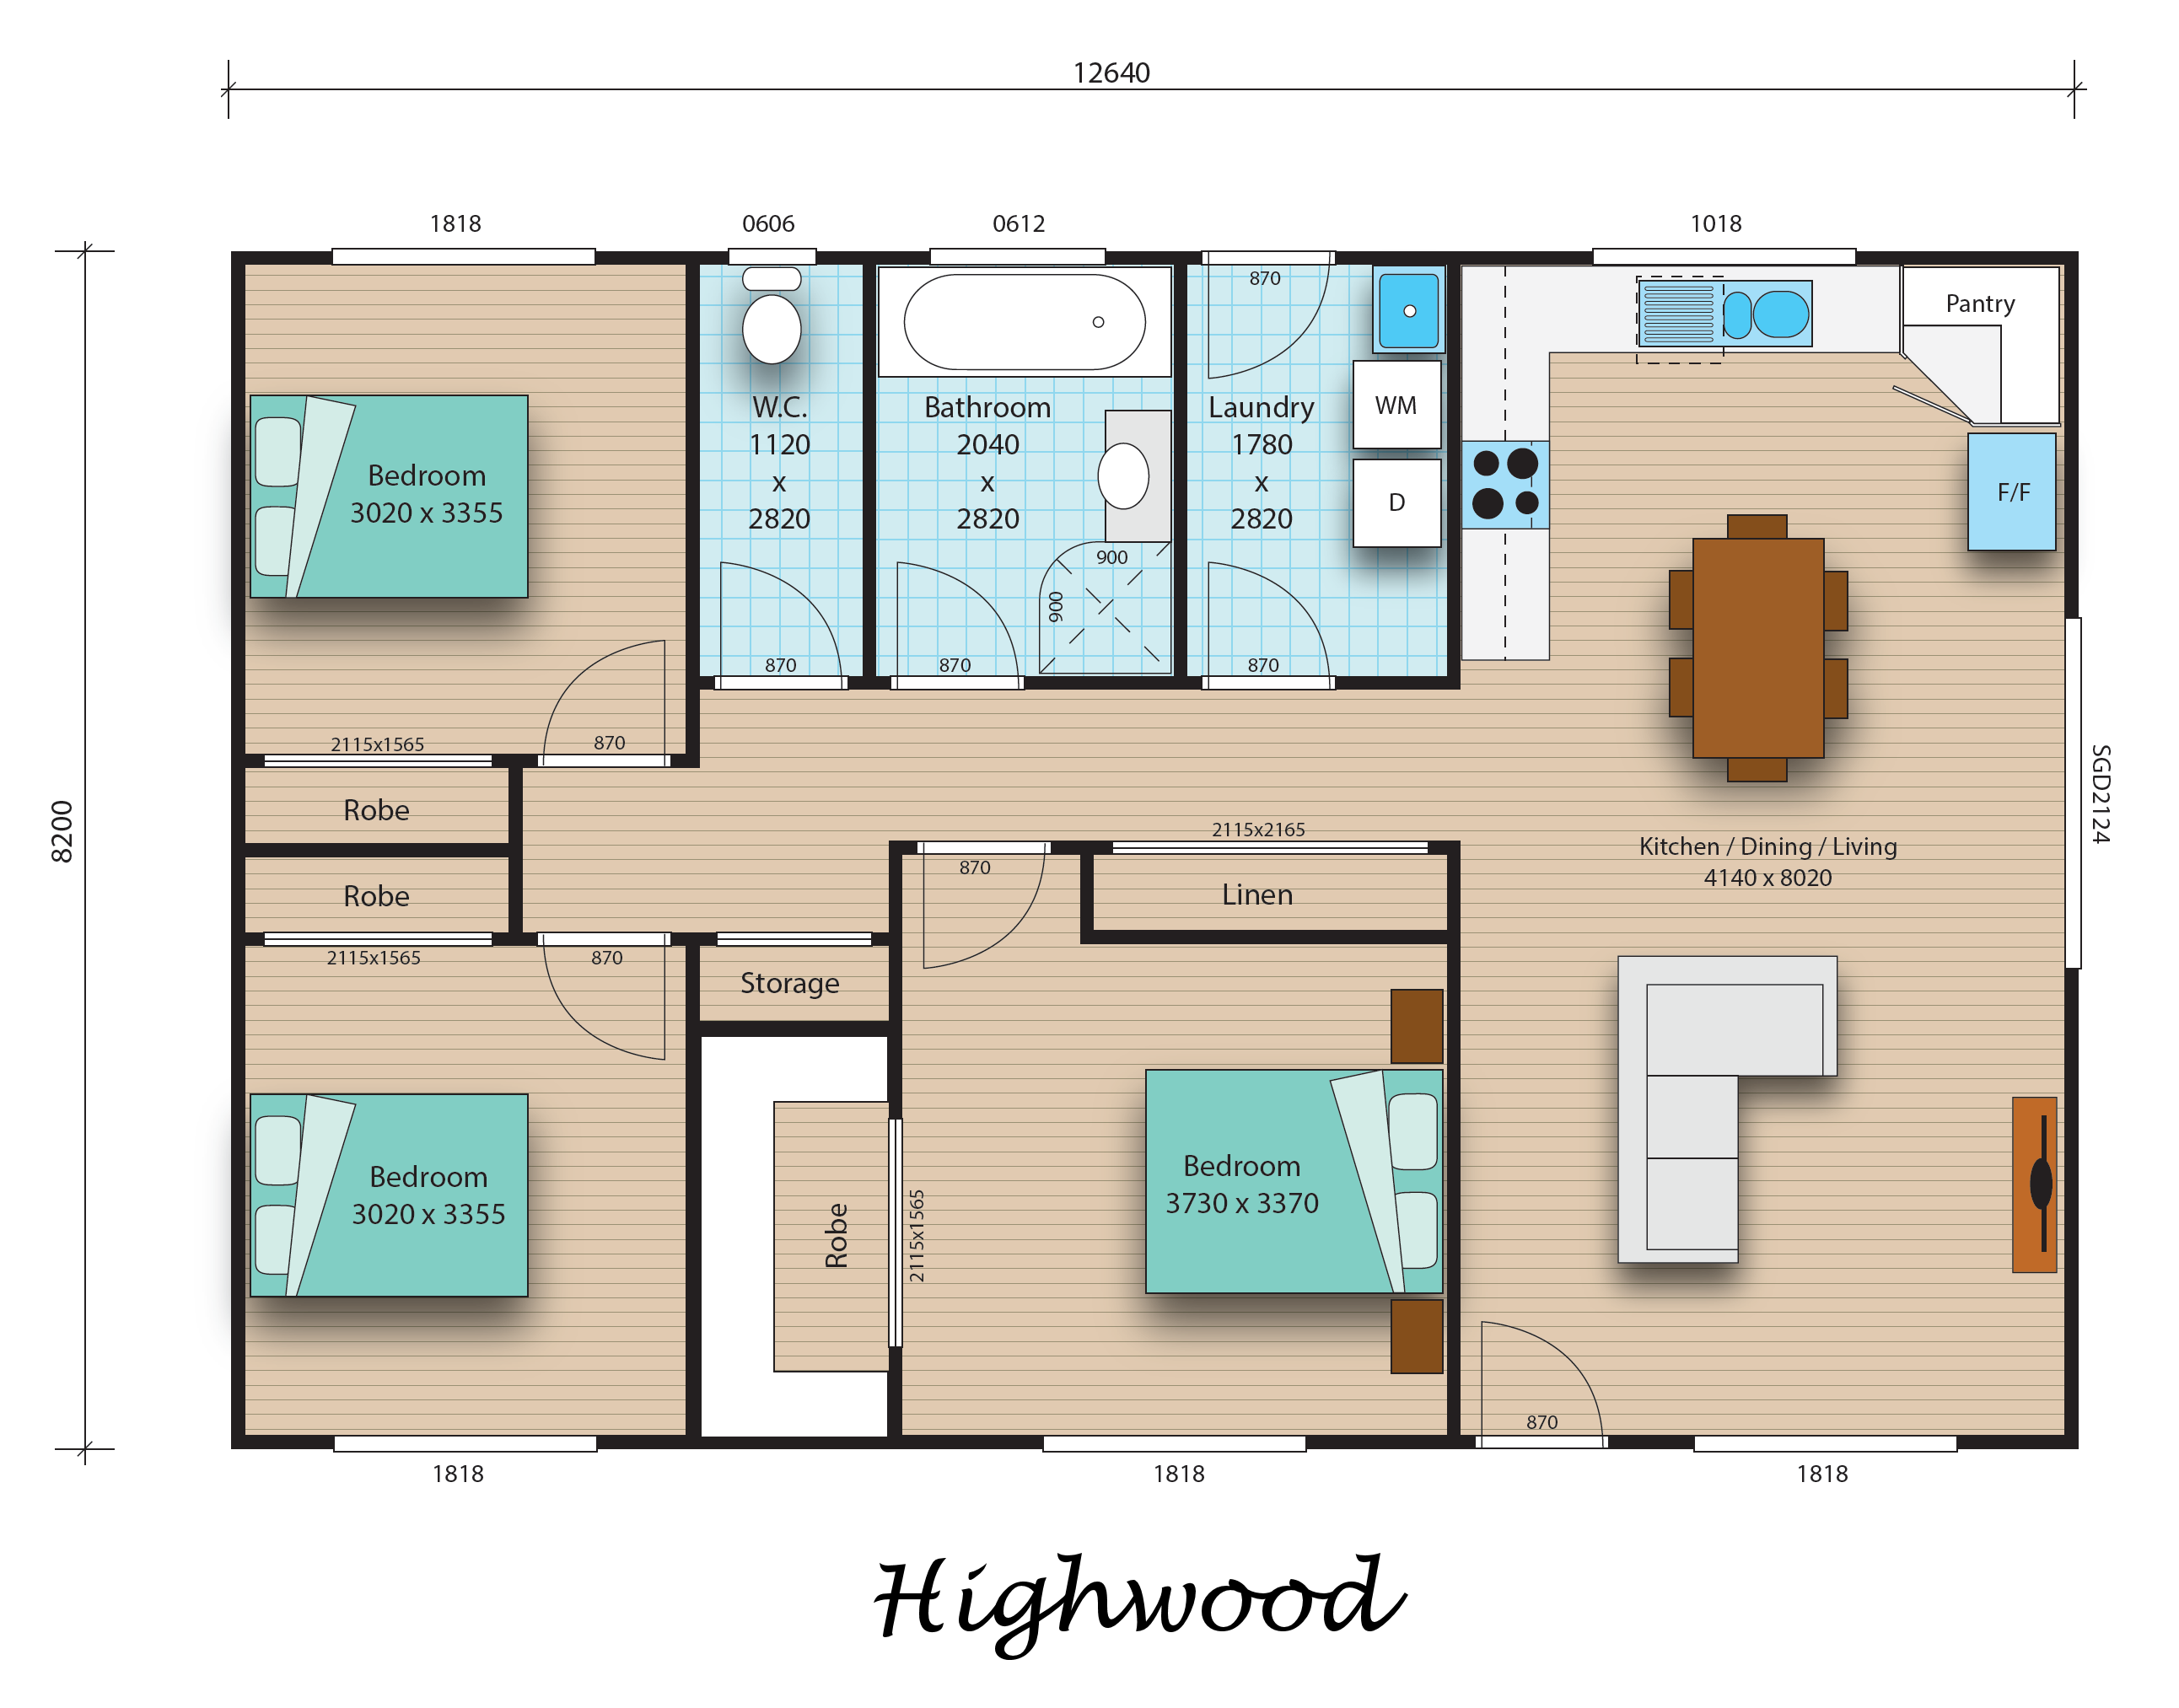 Highwood floorplan image